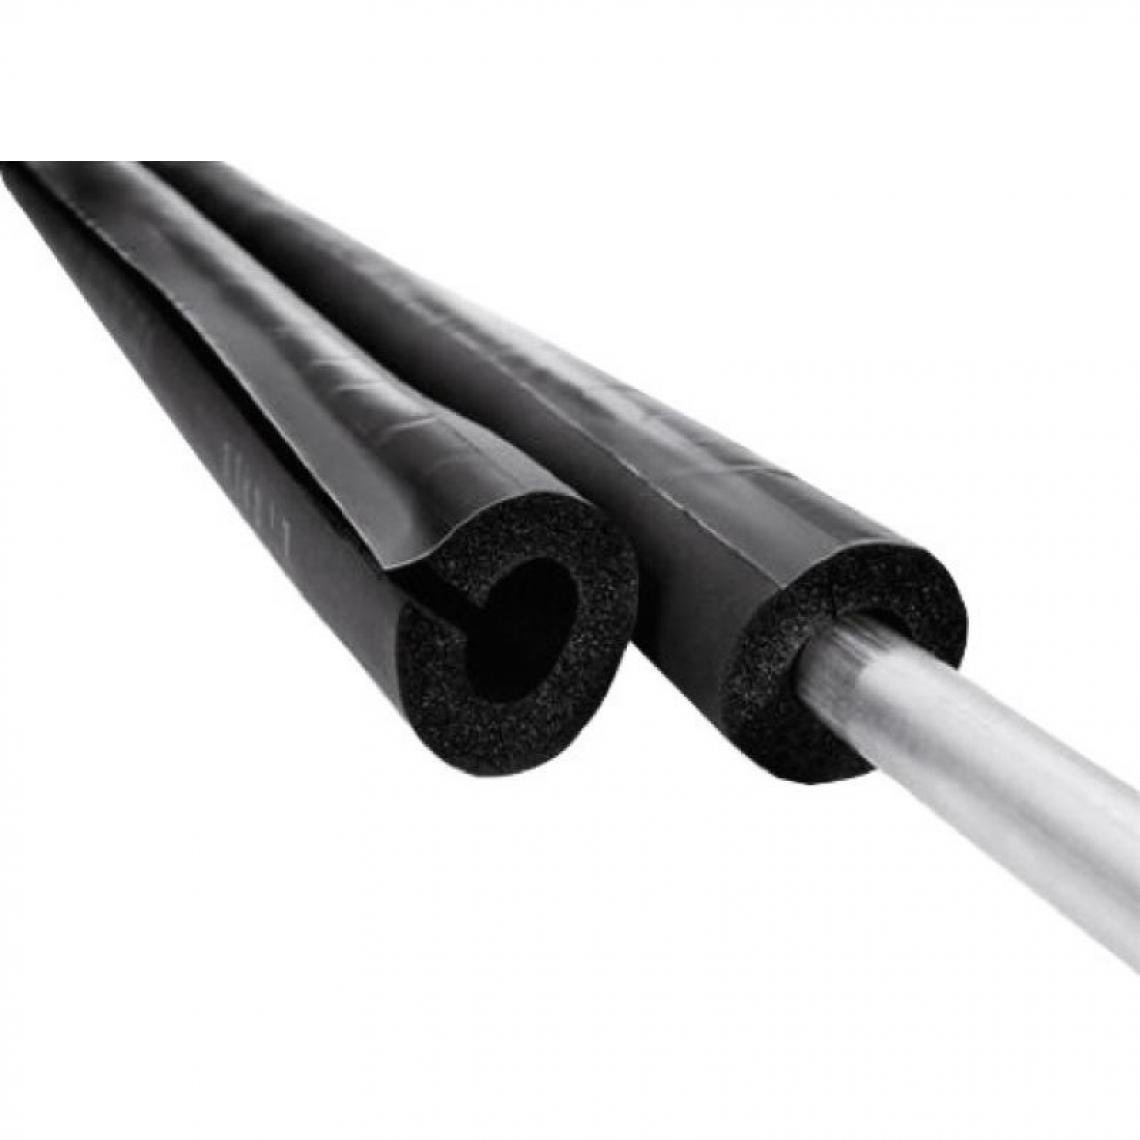 NMC - Manchon isolant fendu M1, épaisseur 13 mm, longueur 2 m, pour tuyaux diamètre 48 - Coudes et raccords PVC